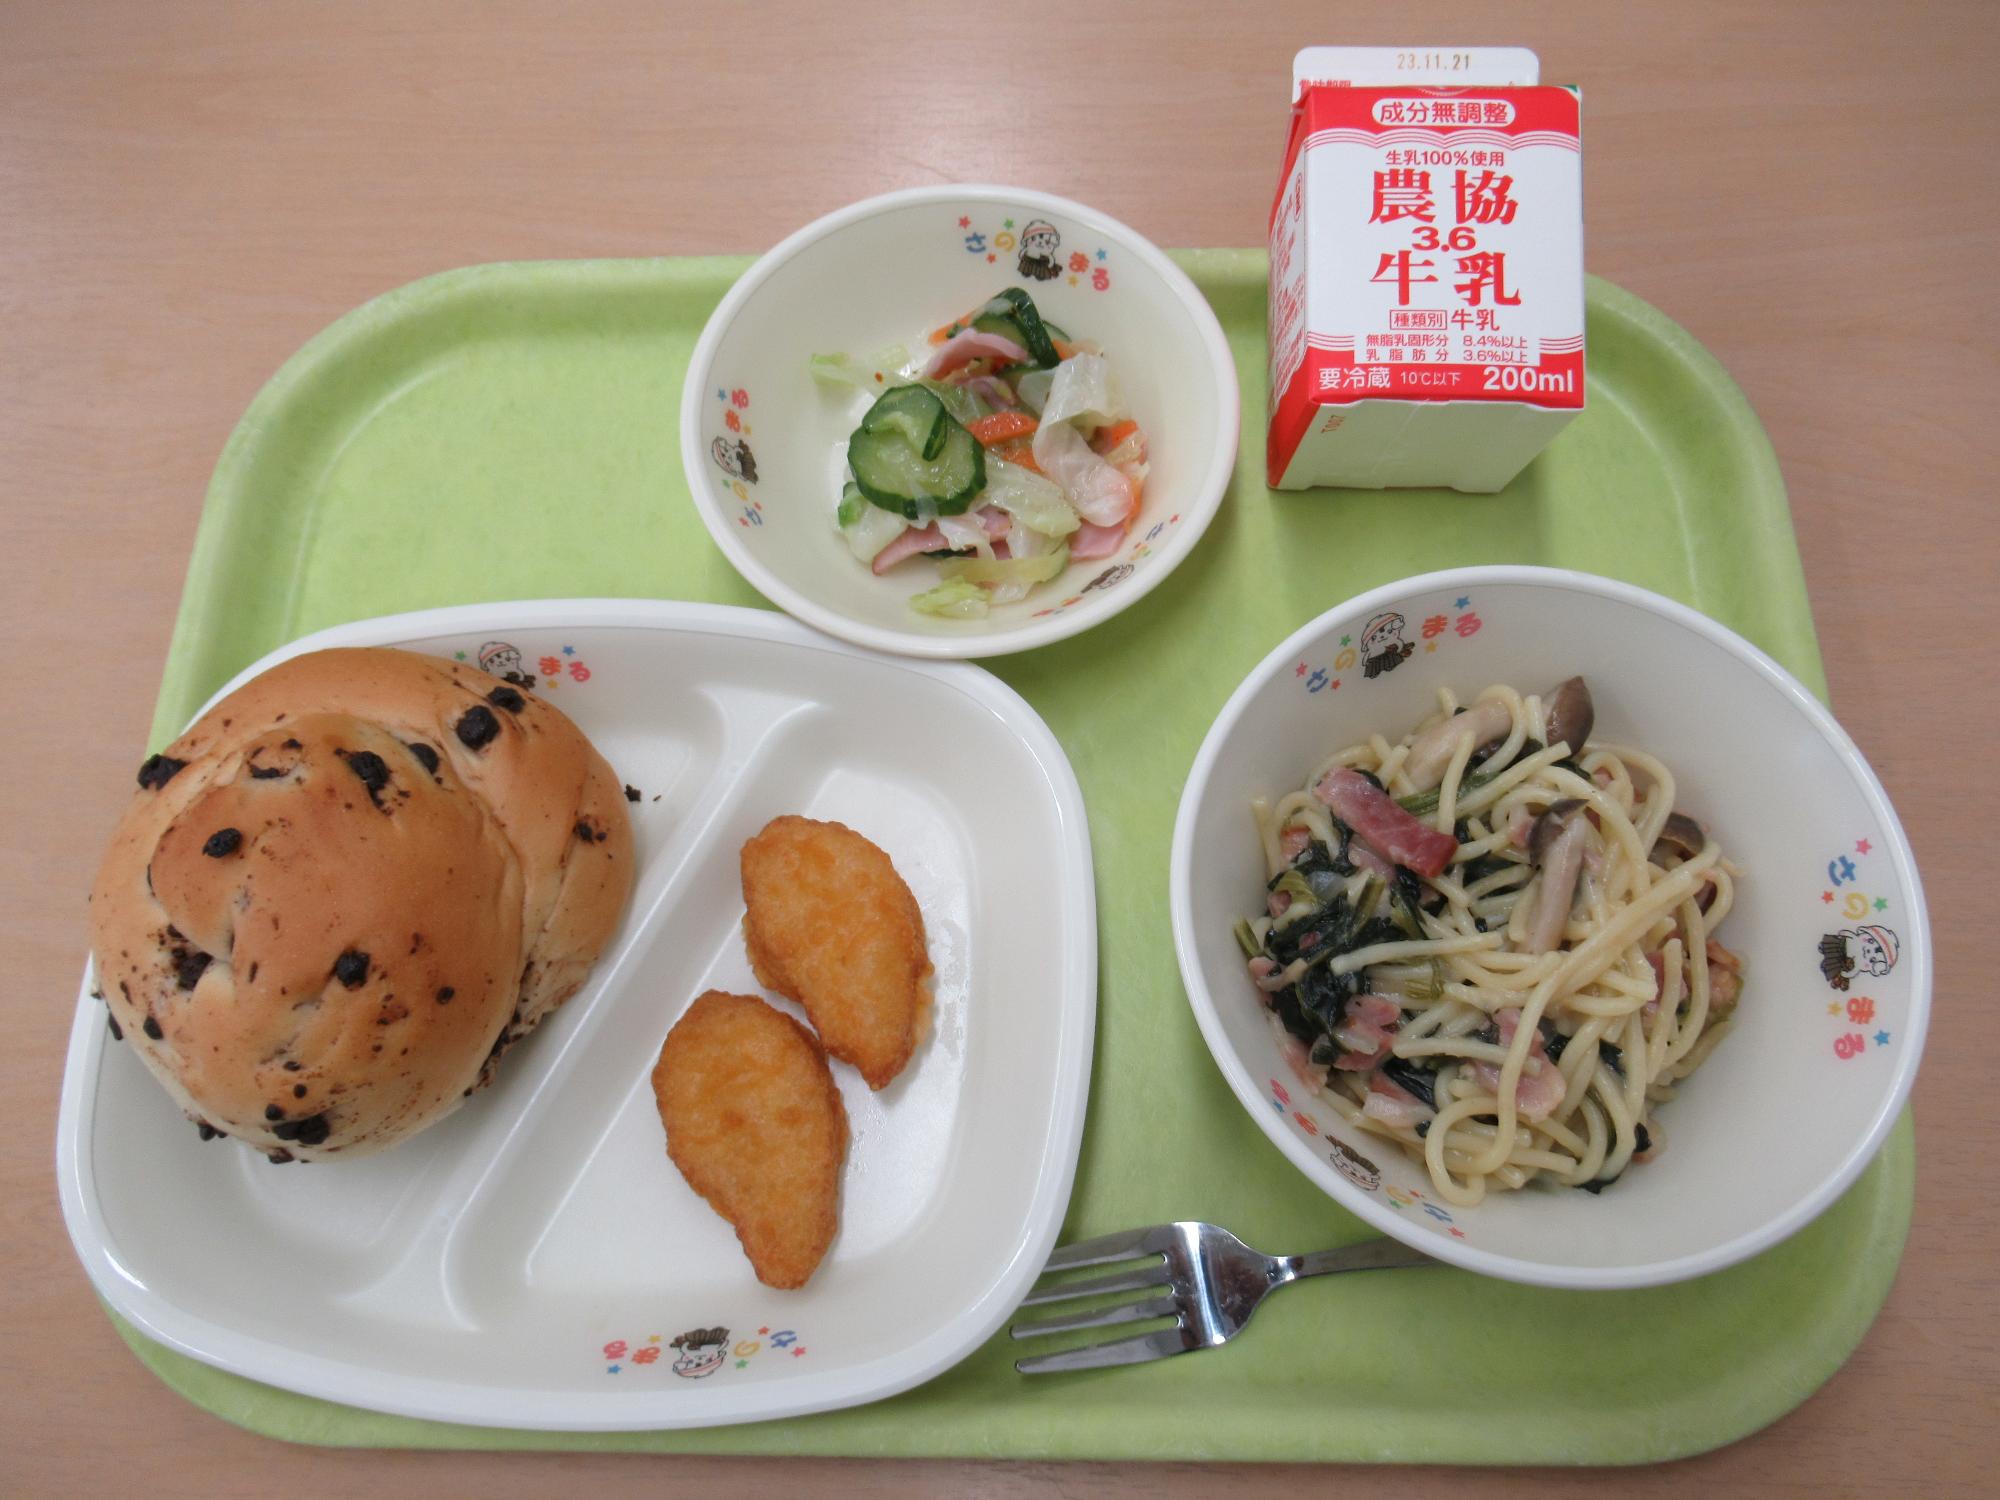 令和5年11月10日南部学校給食センター給食写真